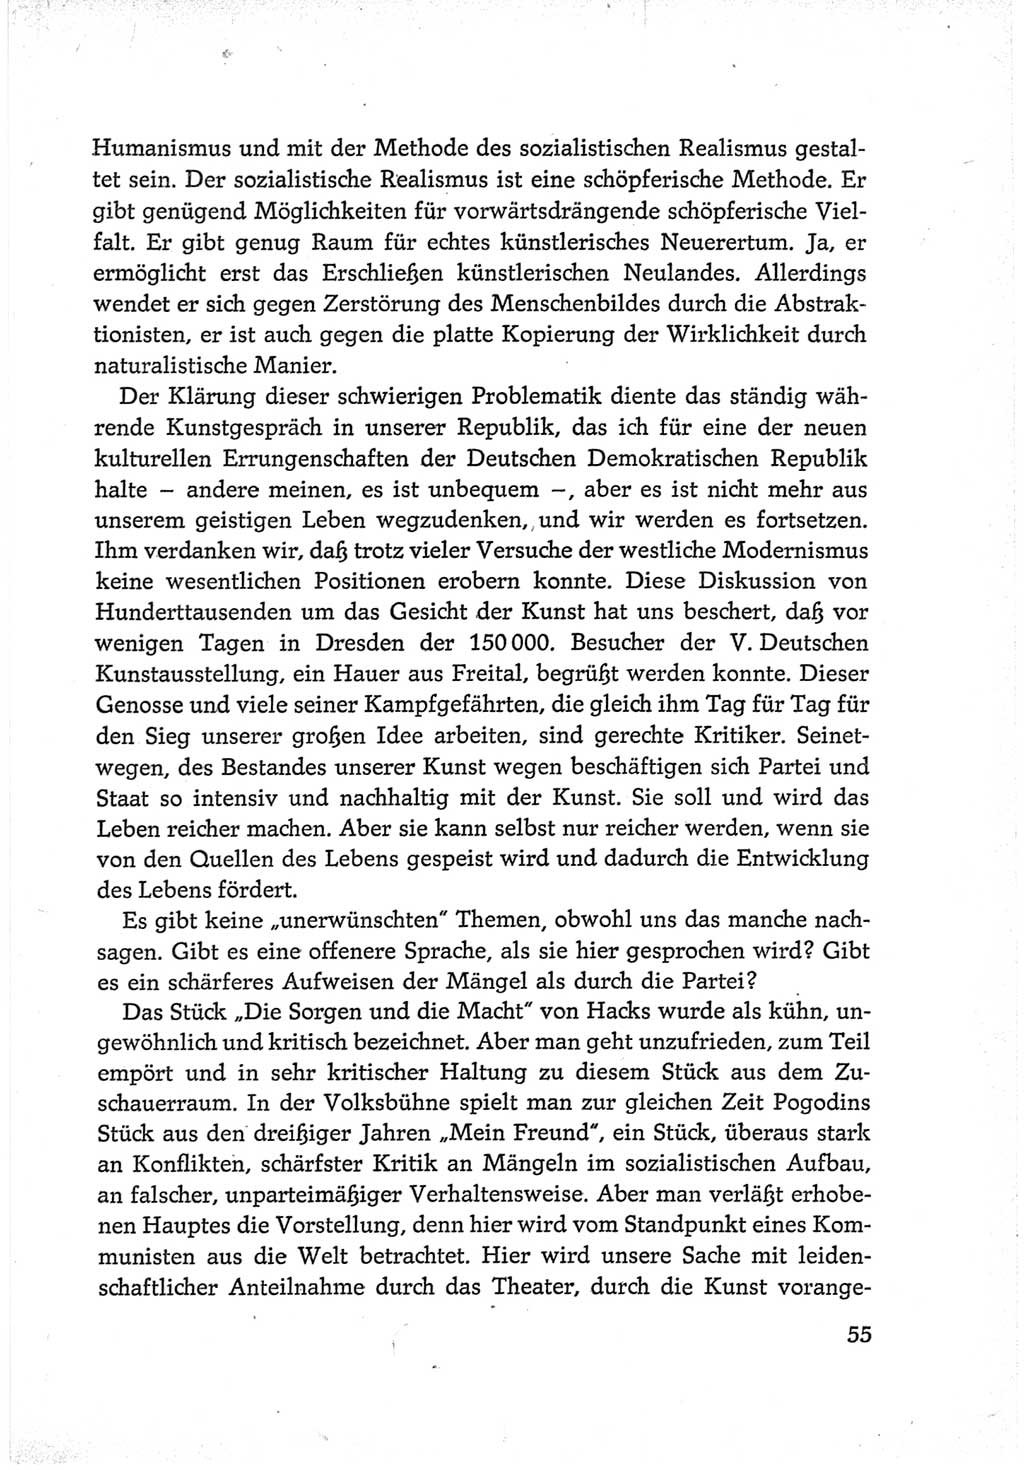 Protokoll der Verhandlungen des Ⅵ. Parteitages der Sozialistischen Einheitspartei Deutschlands (SED) [Deutsche Demokratische Republik (DDR)] 1963, Band Ⅲ, Seite 55 (Prot. Verh. Ⅵ. PT SED DDR 1963, Bd. Ⅲ, S. 55)